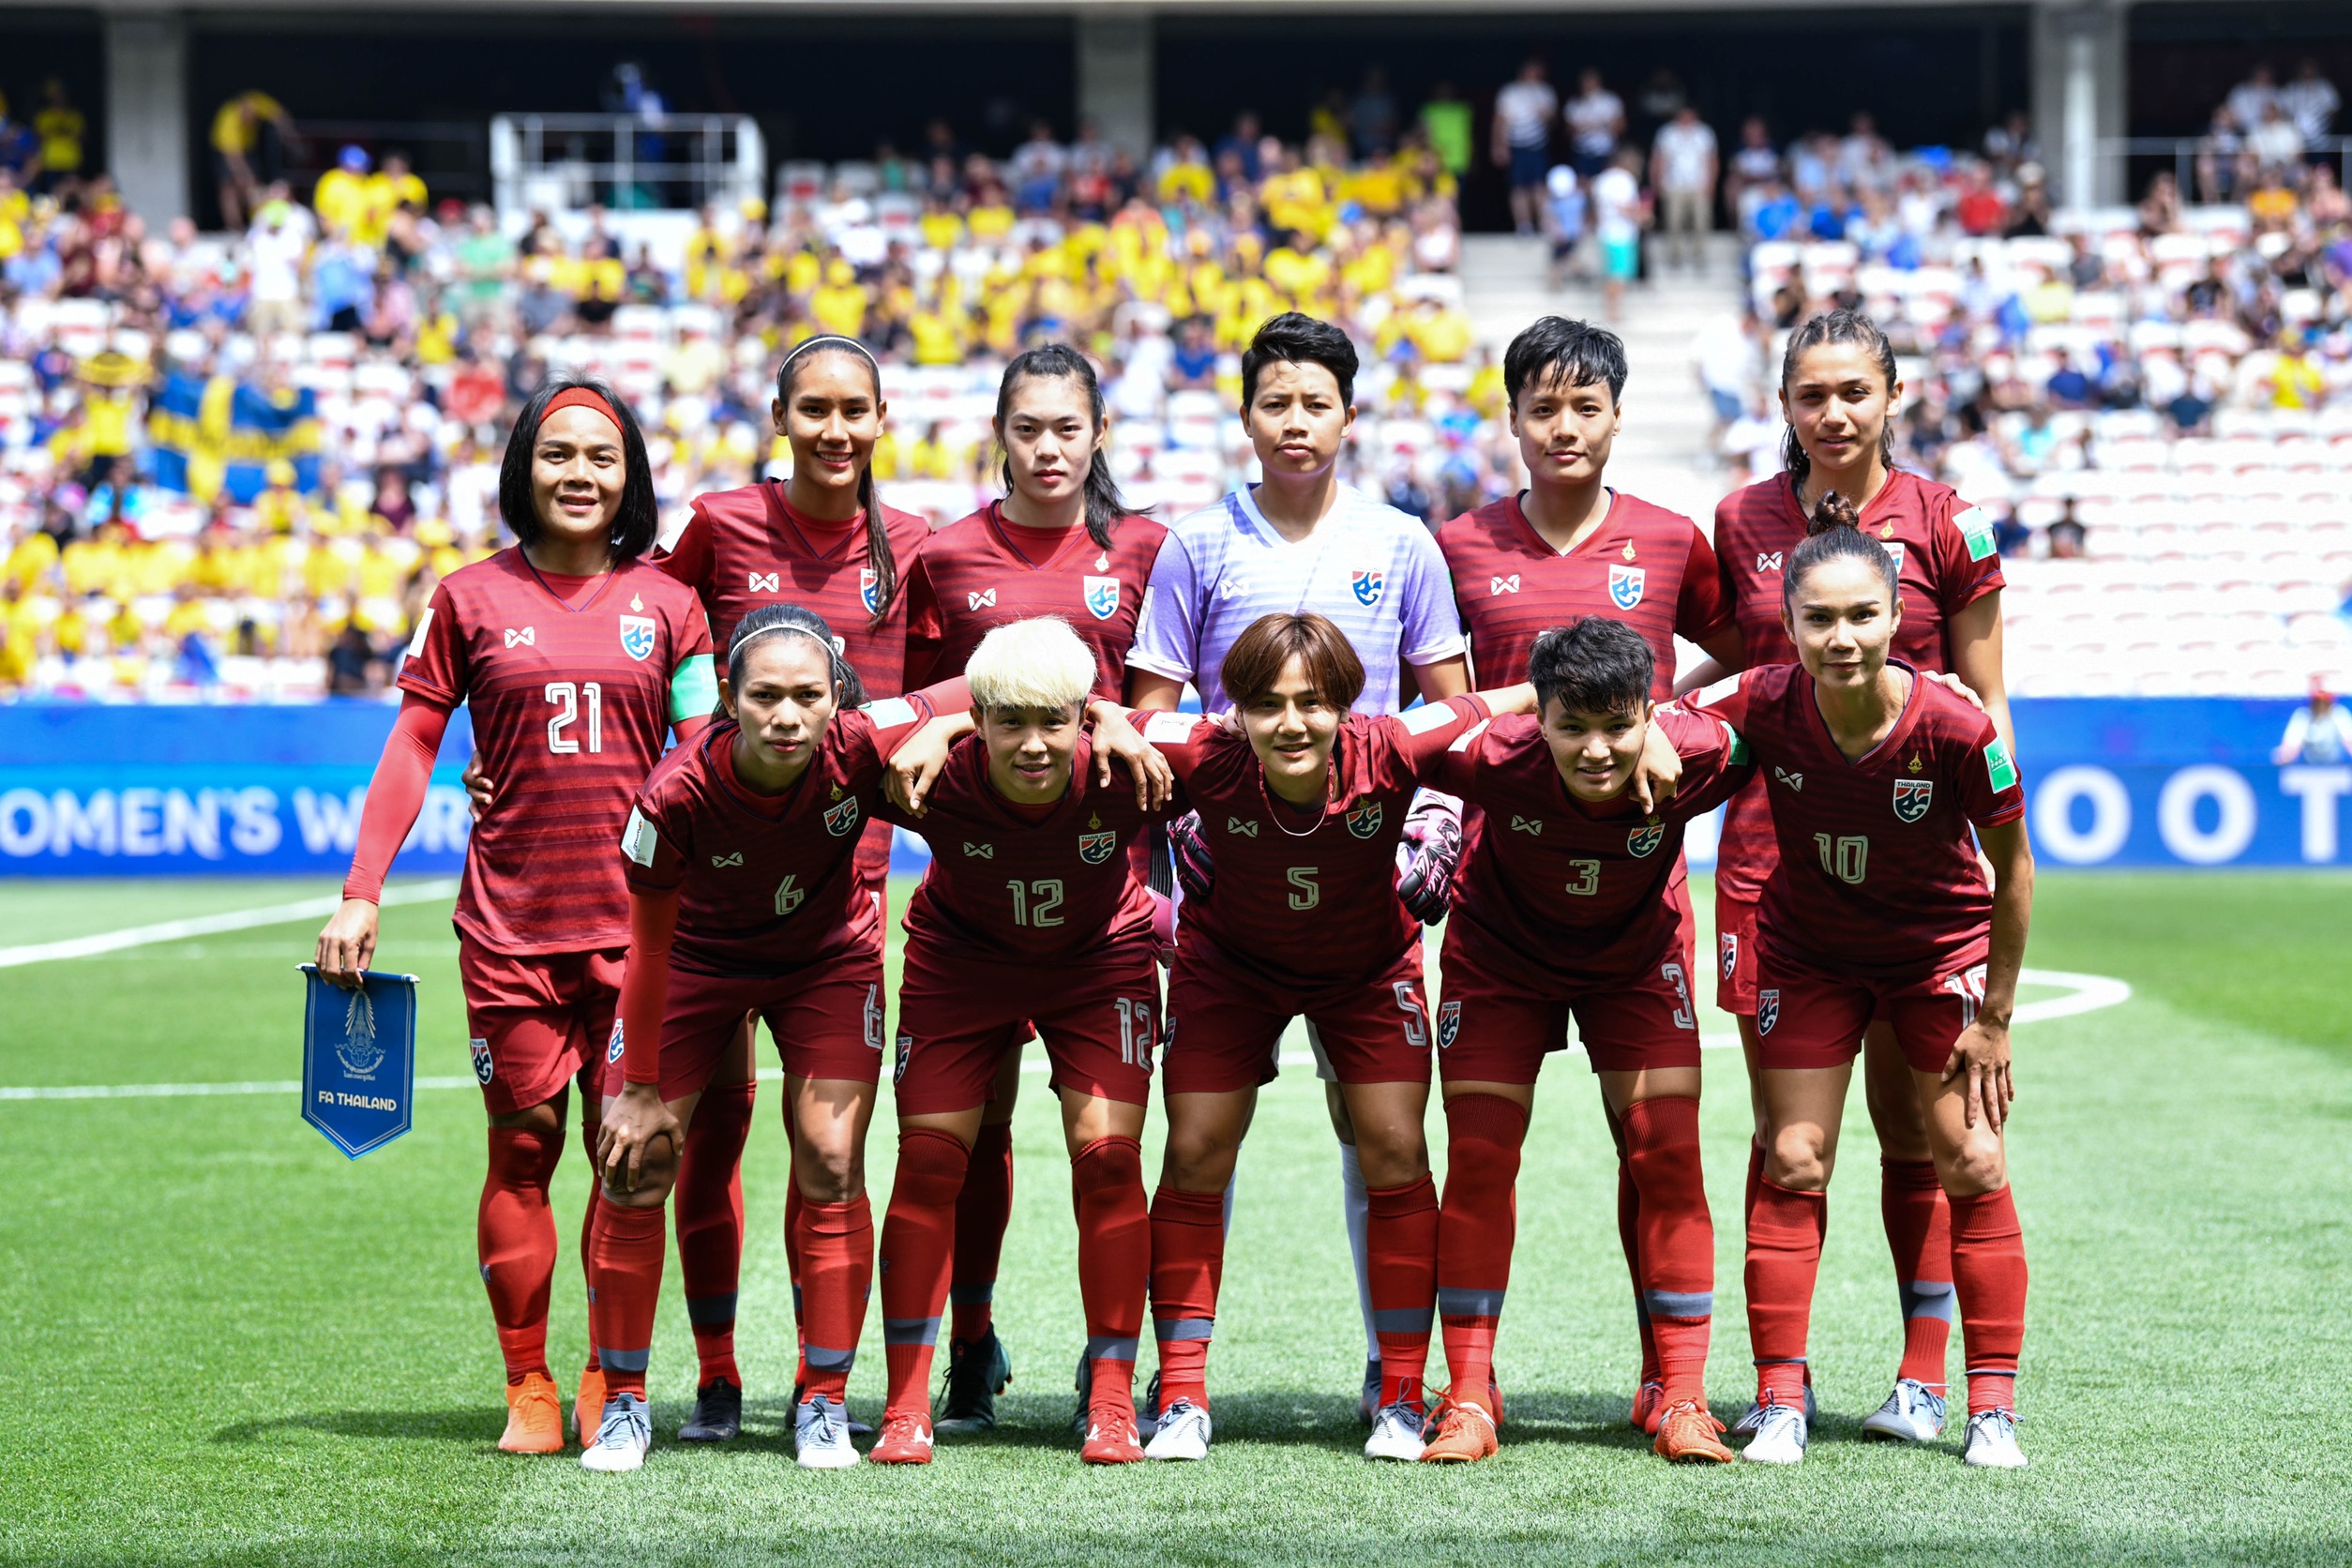 ชิงแชมป์อาเซียน 2019 ทีมชาติไทย ฟุตบอลหญิงทีมชาติไทย สุชาวดี นิลธำรงค์